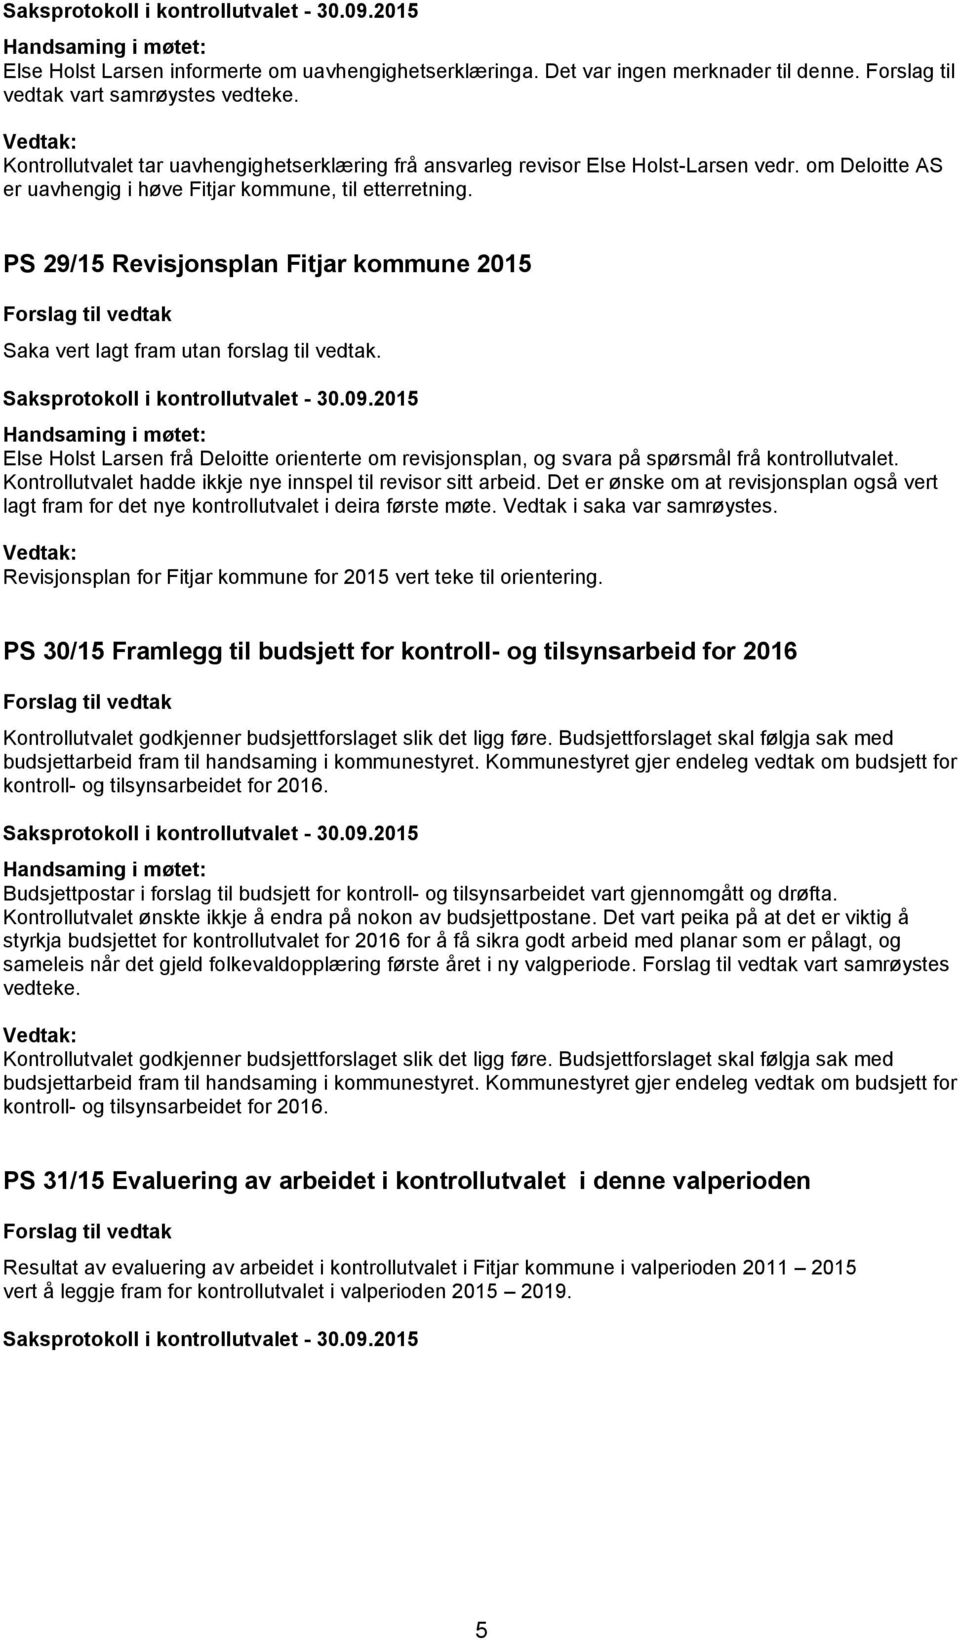 PS 29/15 Revisjonsplan Fitjar kommune 2015 Saka vert lagt fram utan forslag til vedtak. Else Holst Larsen frå Deloitte orienterte om revisjonsplan, og svara på spørsmål frå kontrollutvalet.